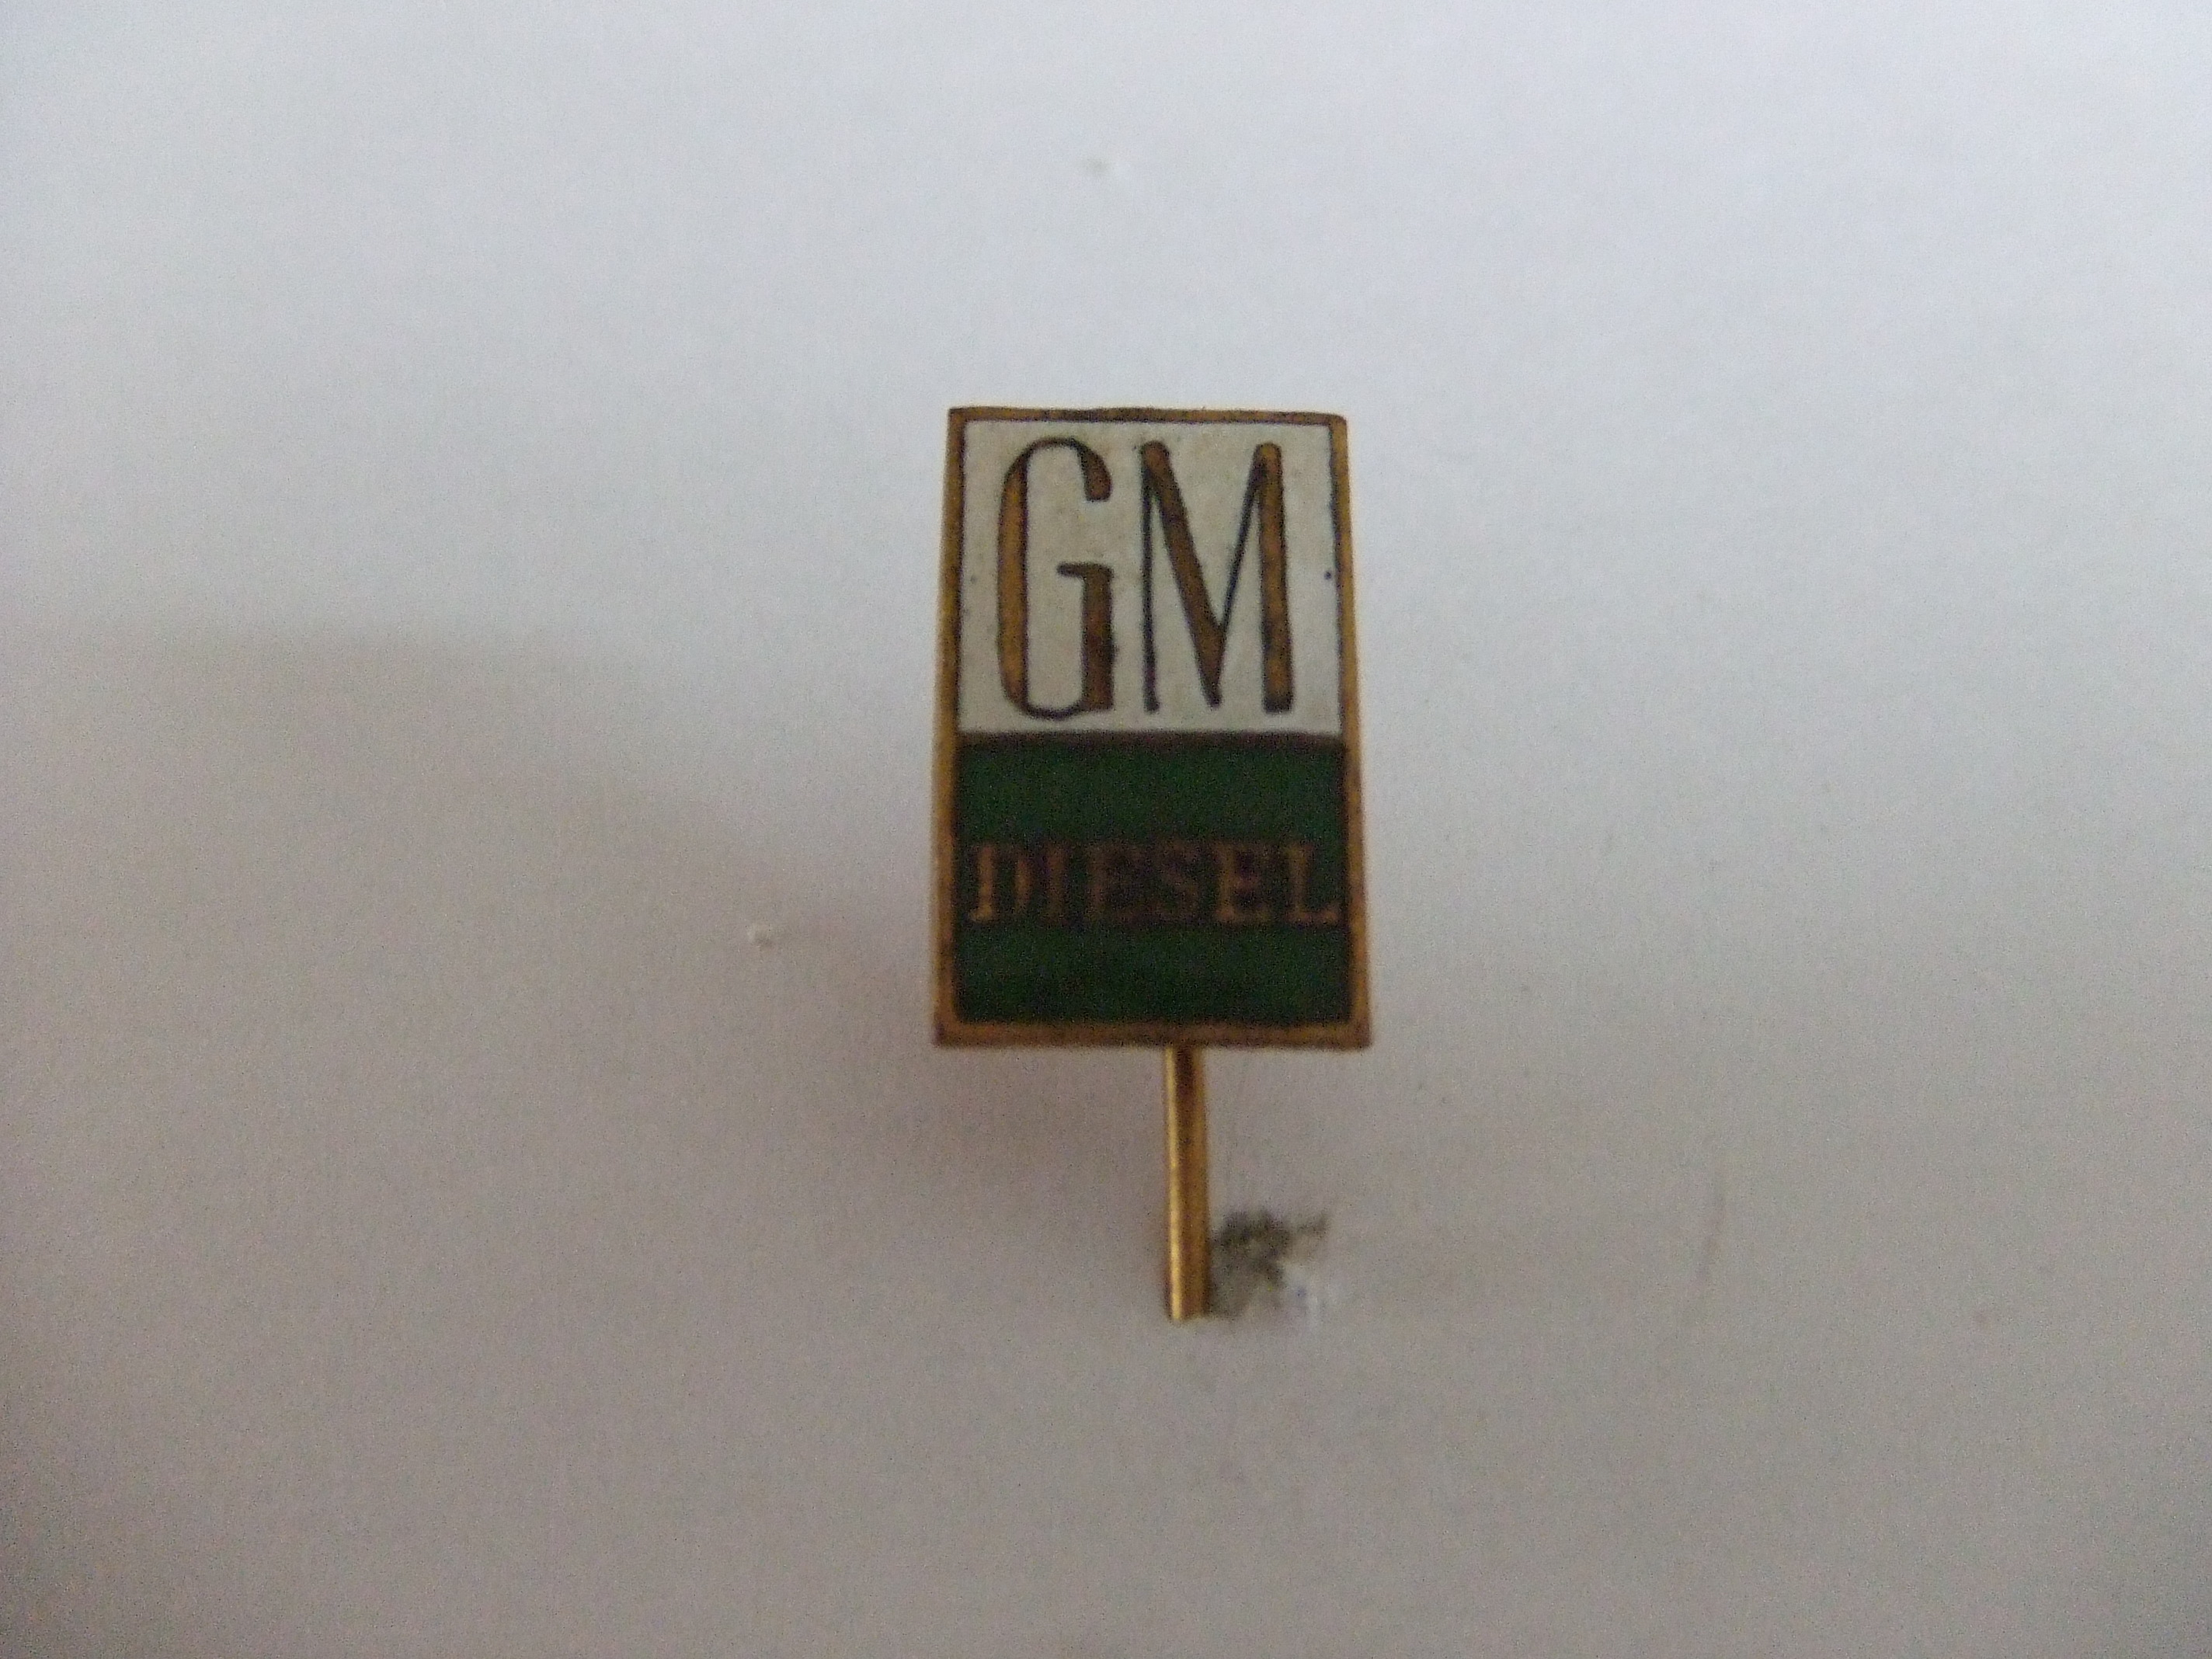 Auto GM diesel